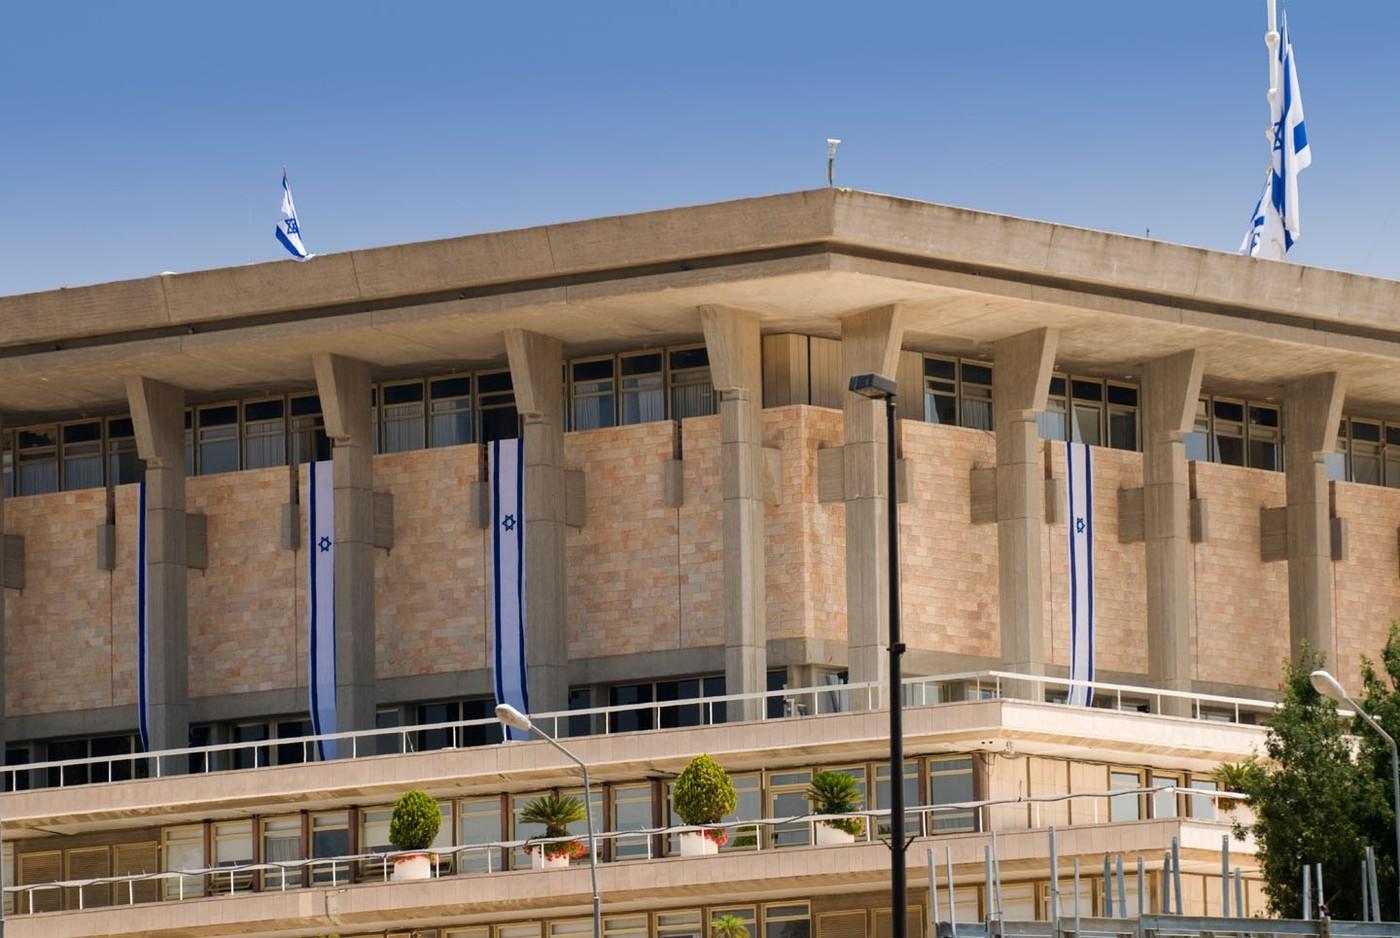 Izraelski parlament